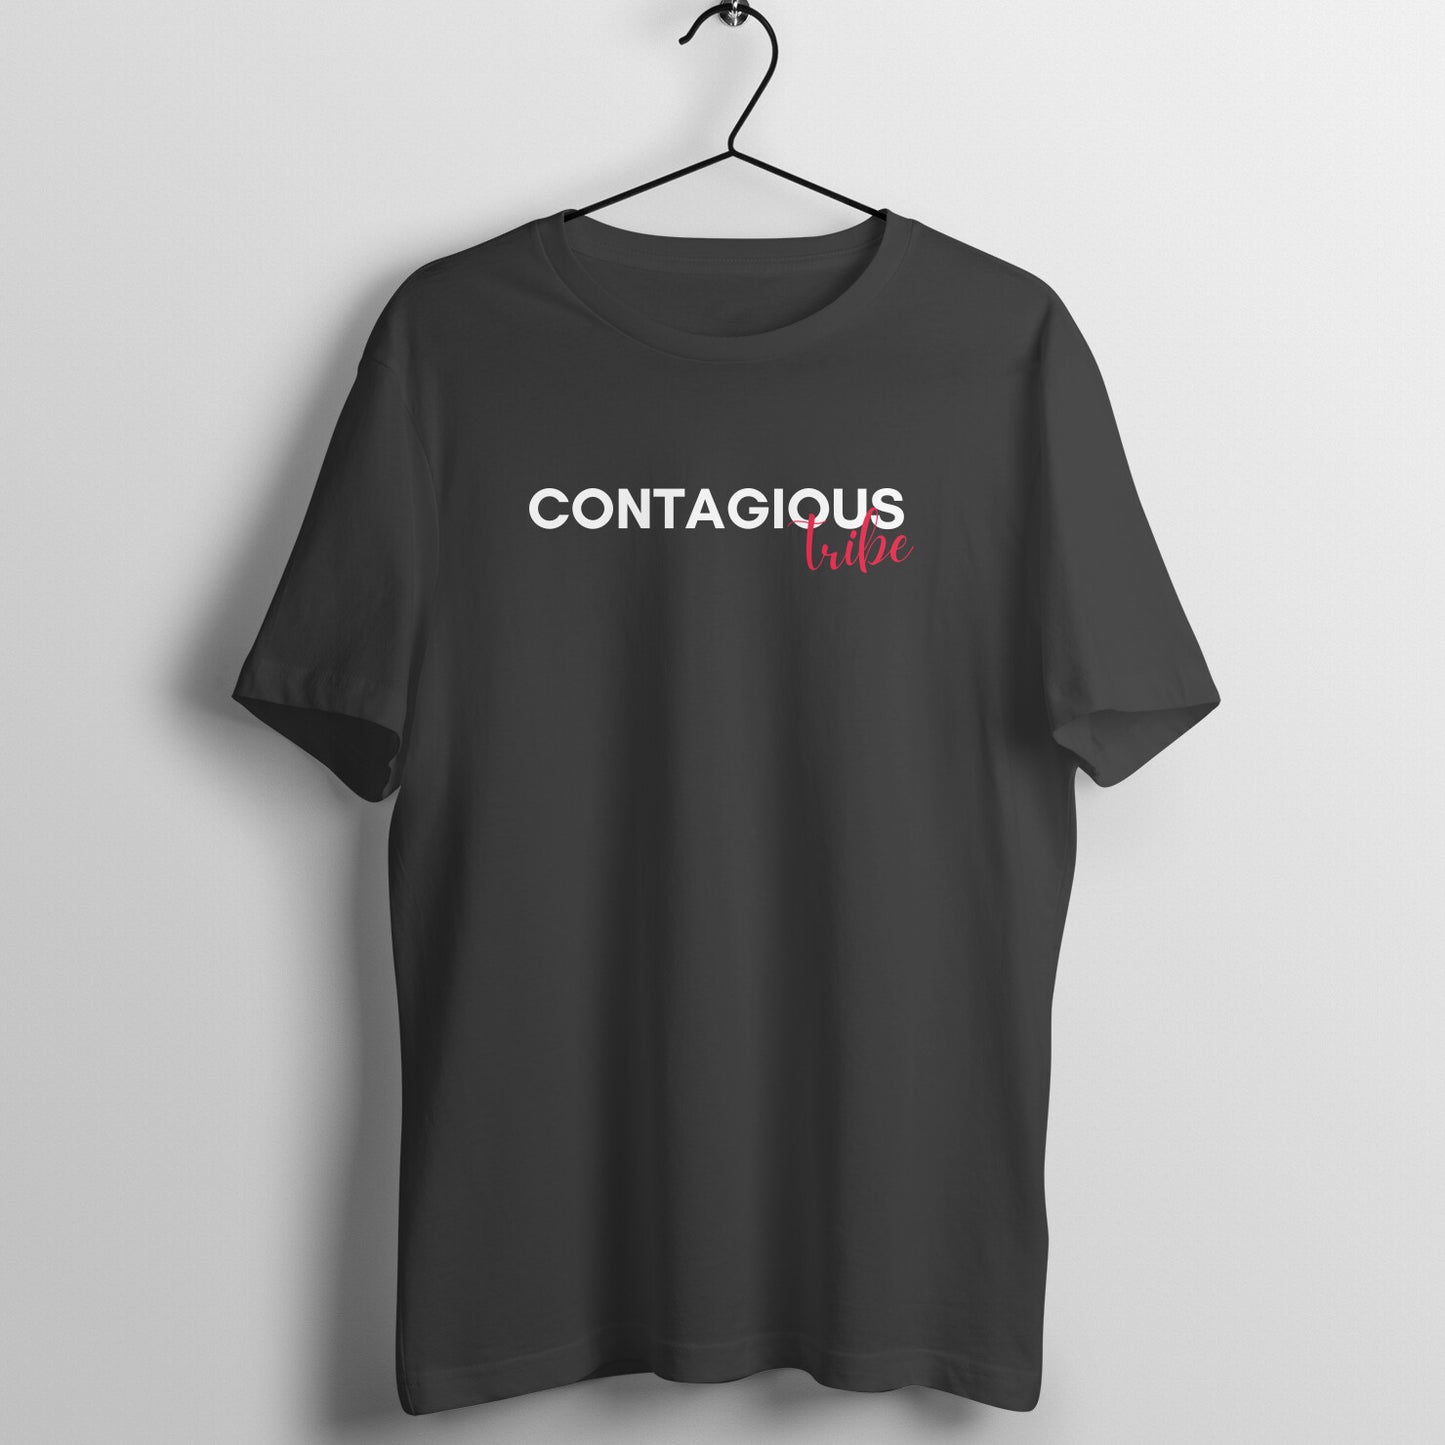 Contagious Tribe Tshirt